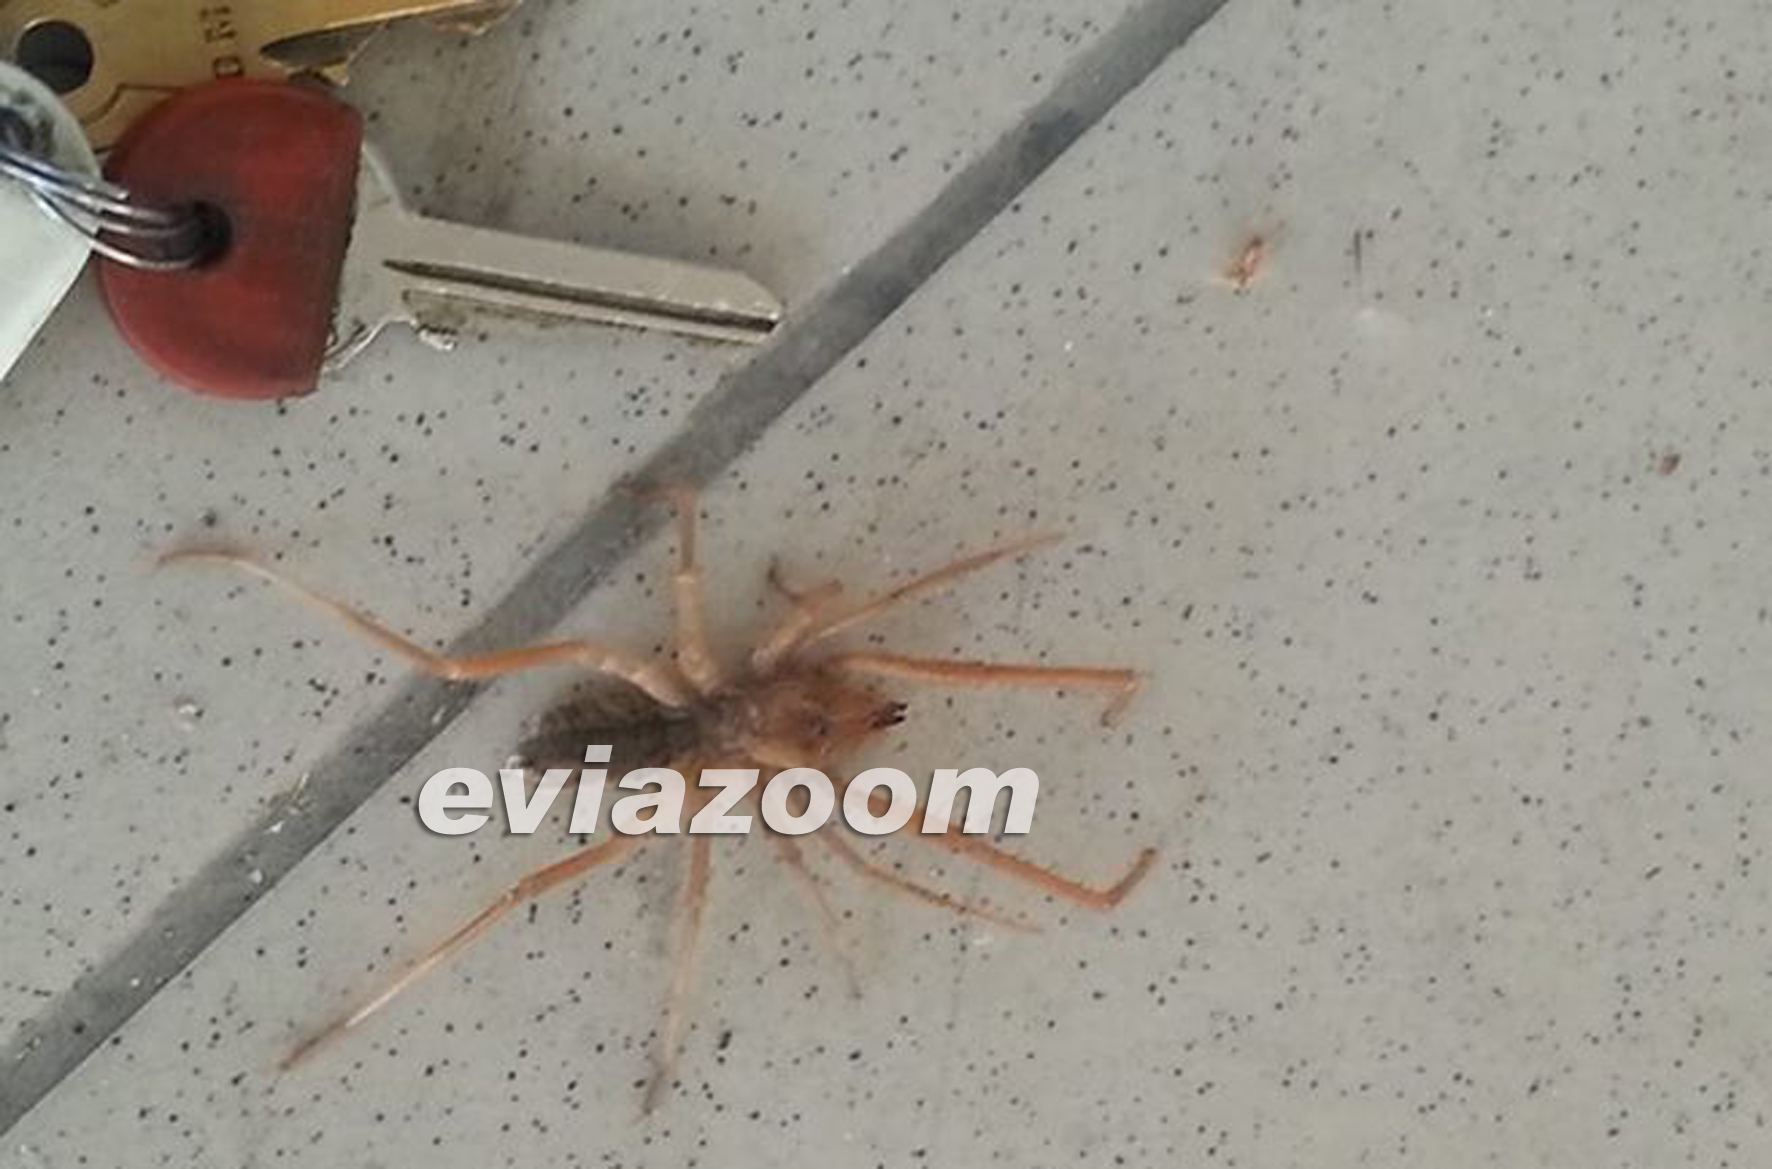 Η συγκεκριμένη αράχνη που βρέθηκε στη Χαλκίδα, έχει το μέγεθος ενός κλειδιούΦΩΤΟ από το EviaZoom